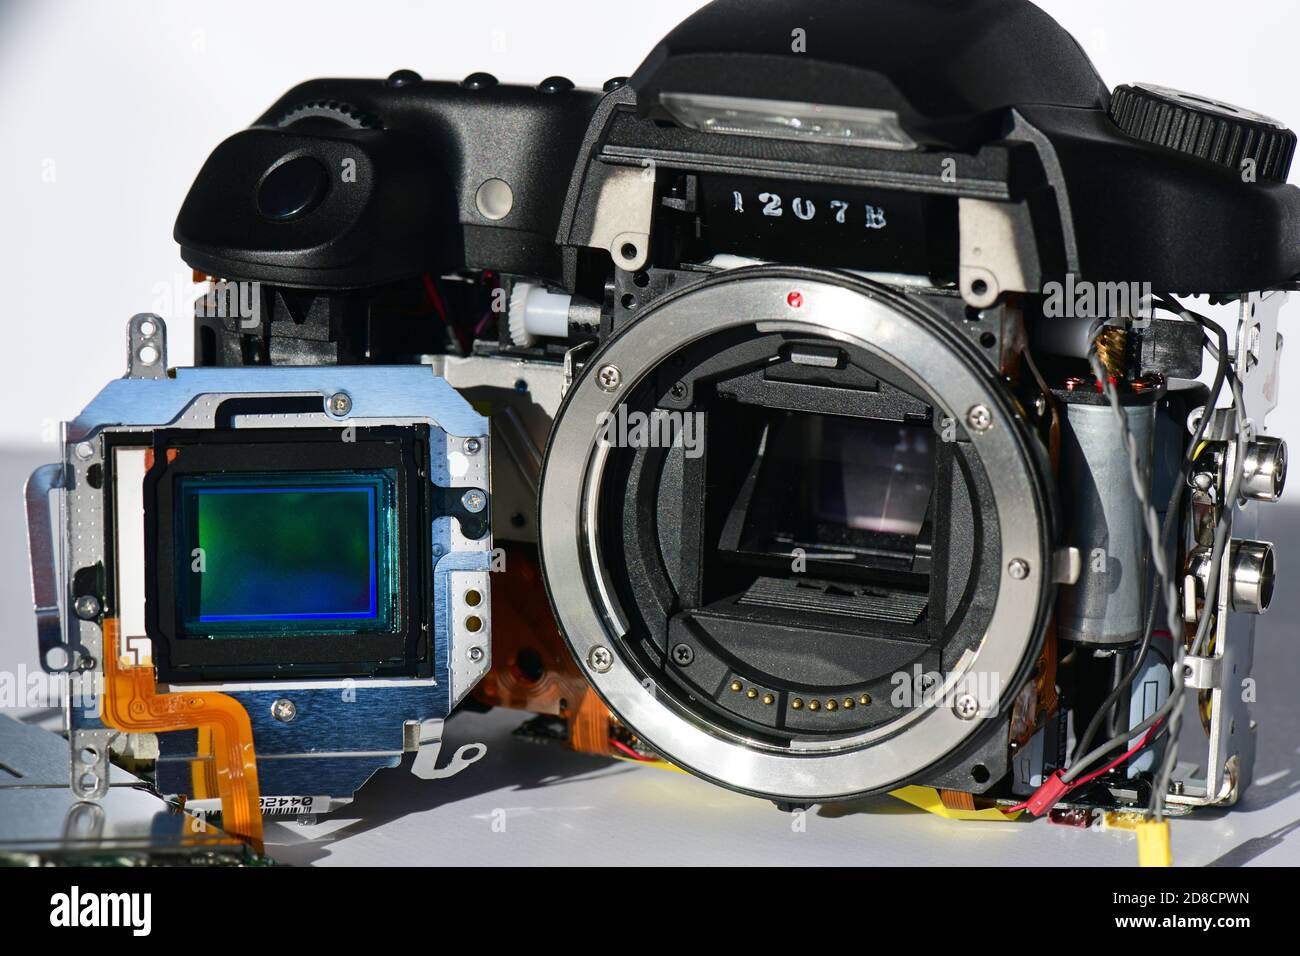 cámara digital que muestra el sensor de imagen ccd ( dispositivo acoplado cargado ) Foto de stock